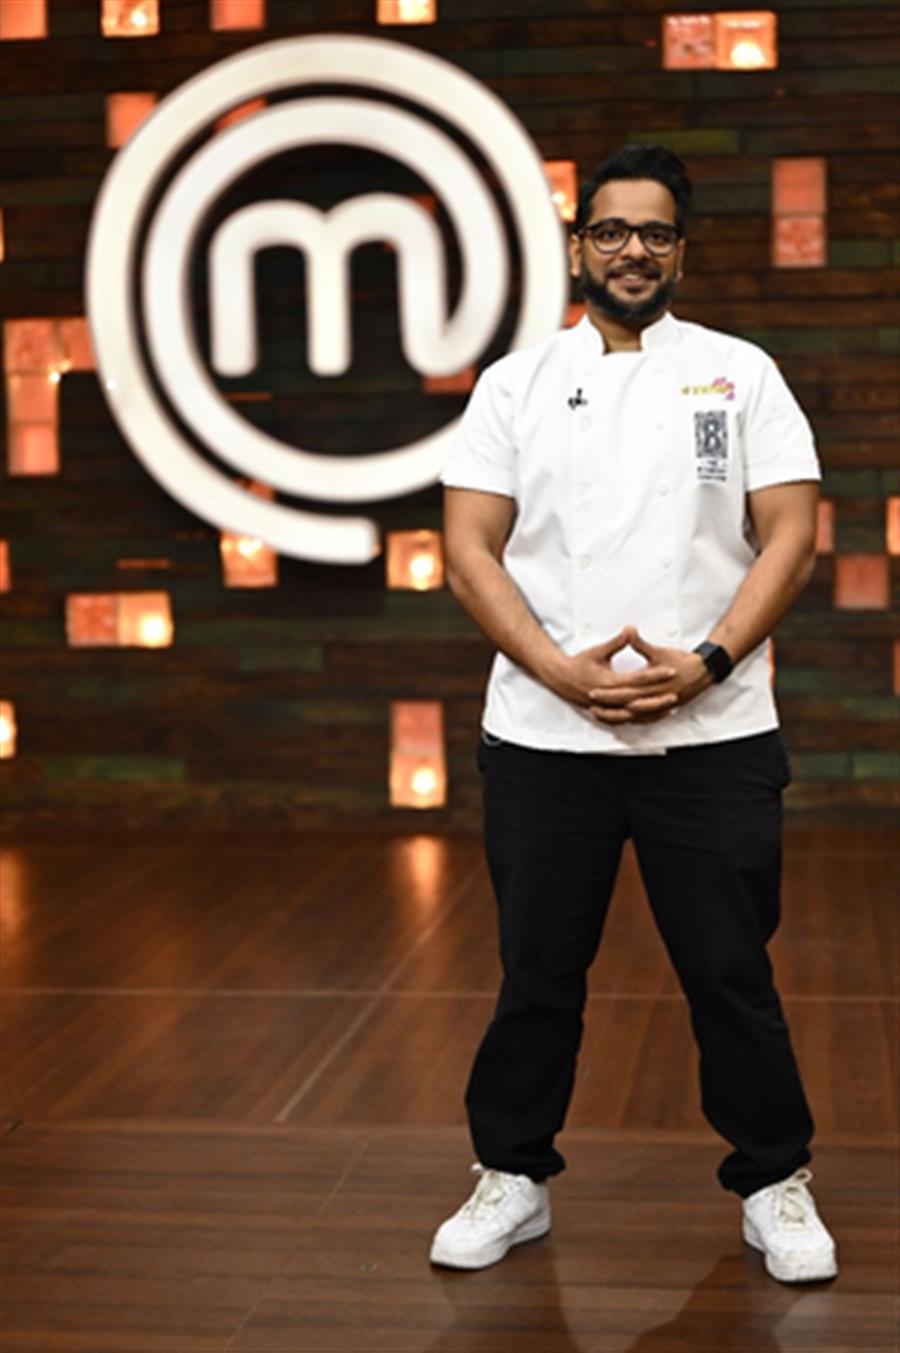 Chef Hussain Shahzad adds twist with TIP Challenge in ‘MasterChef India’